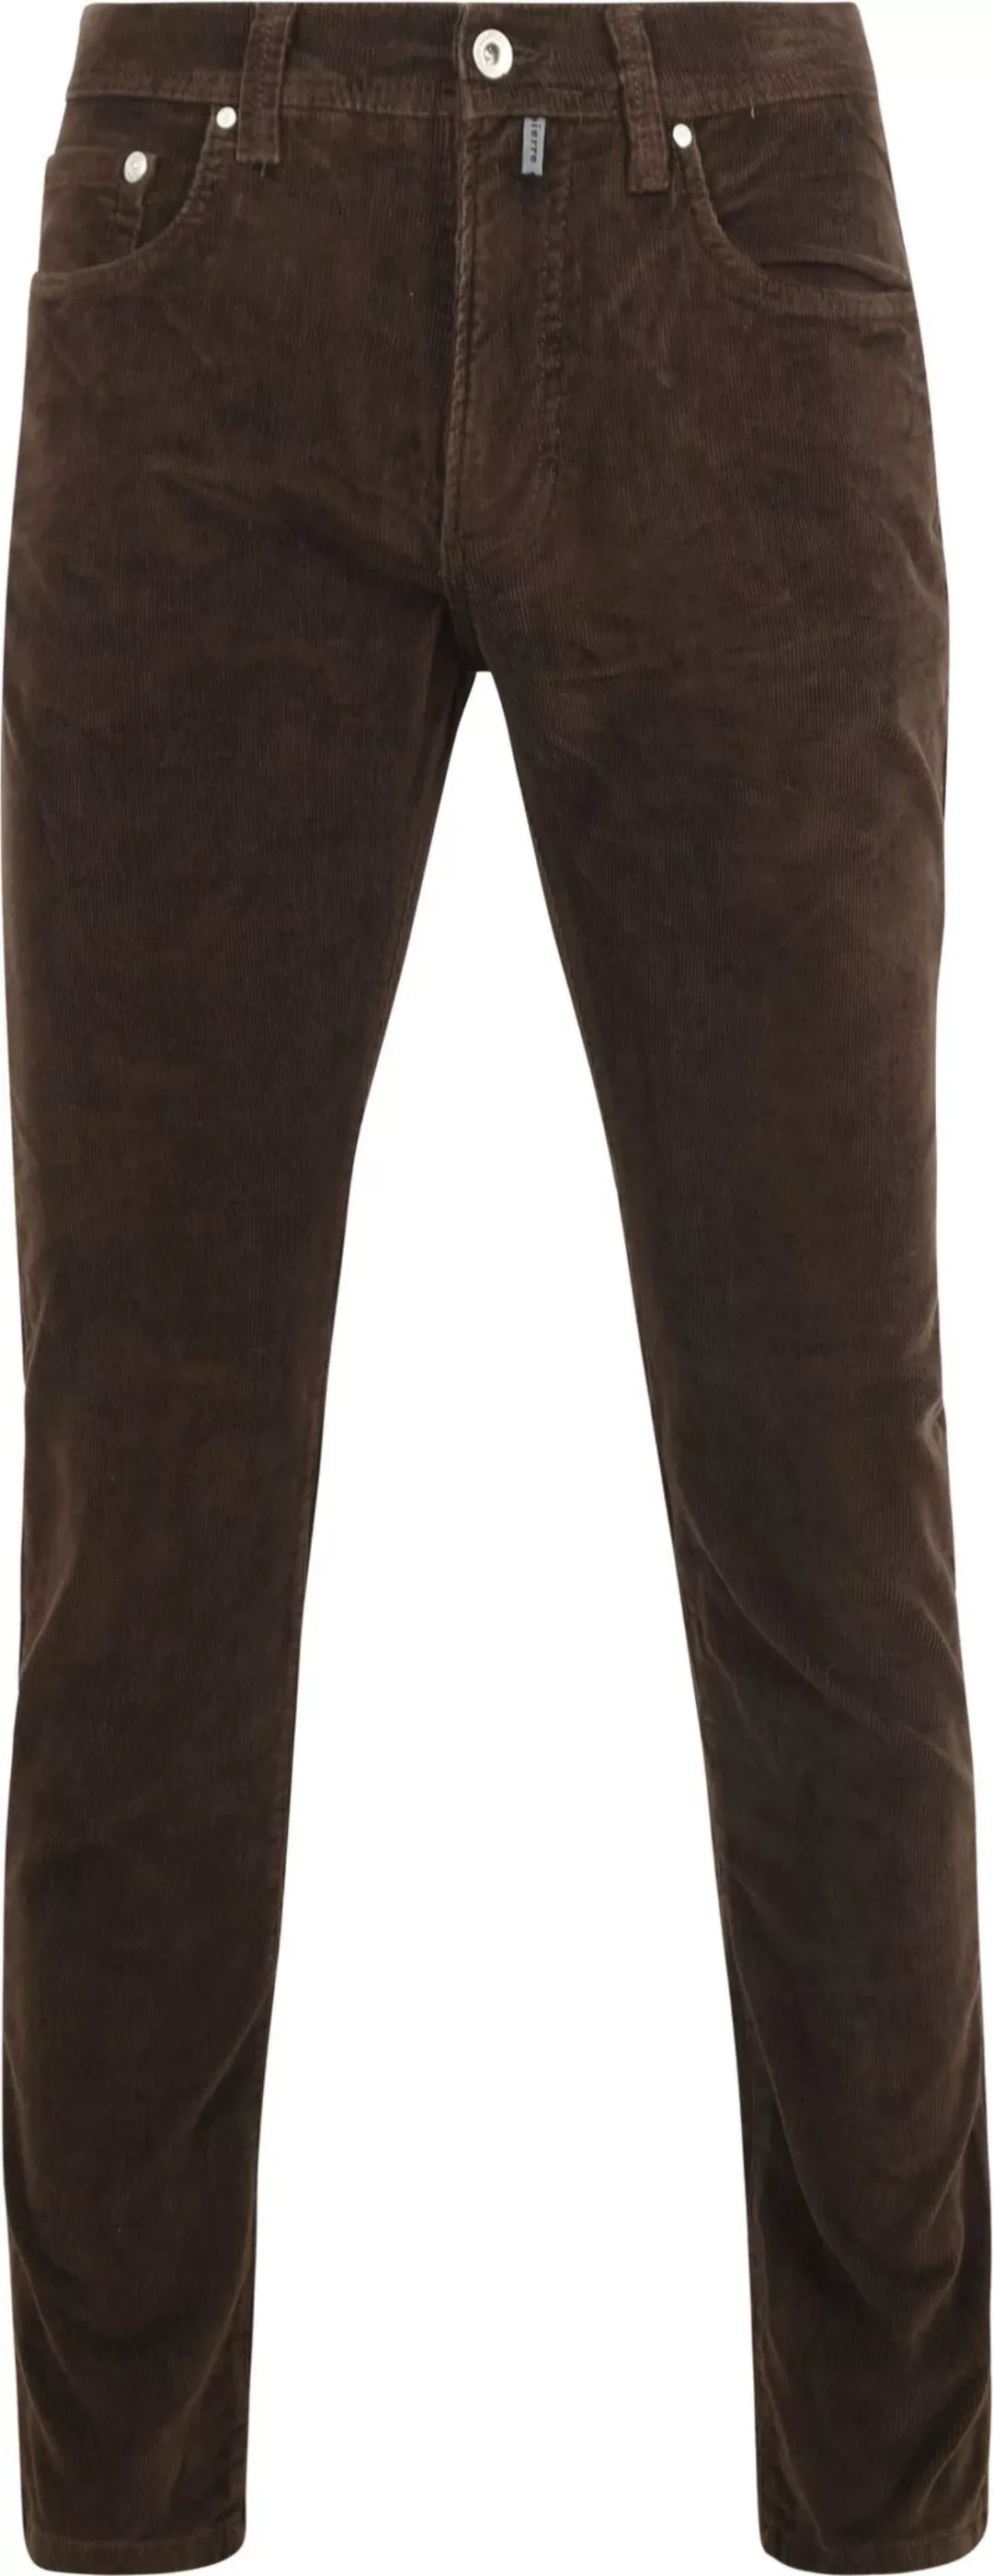 Pierre Cardin Trousers Lyon Future Flex Corduroy Braun - Größe W 33 - L 34 günstig online kaufen